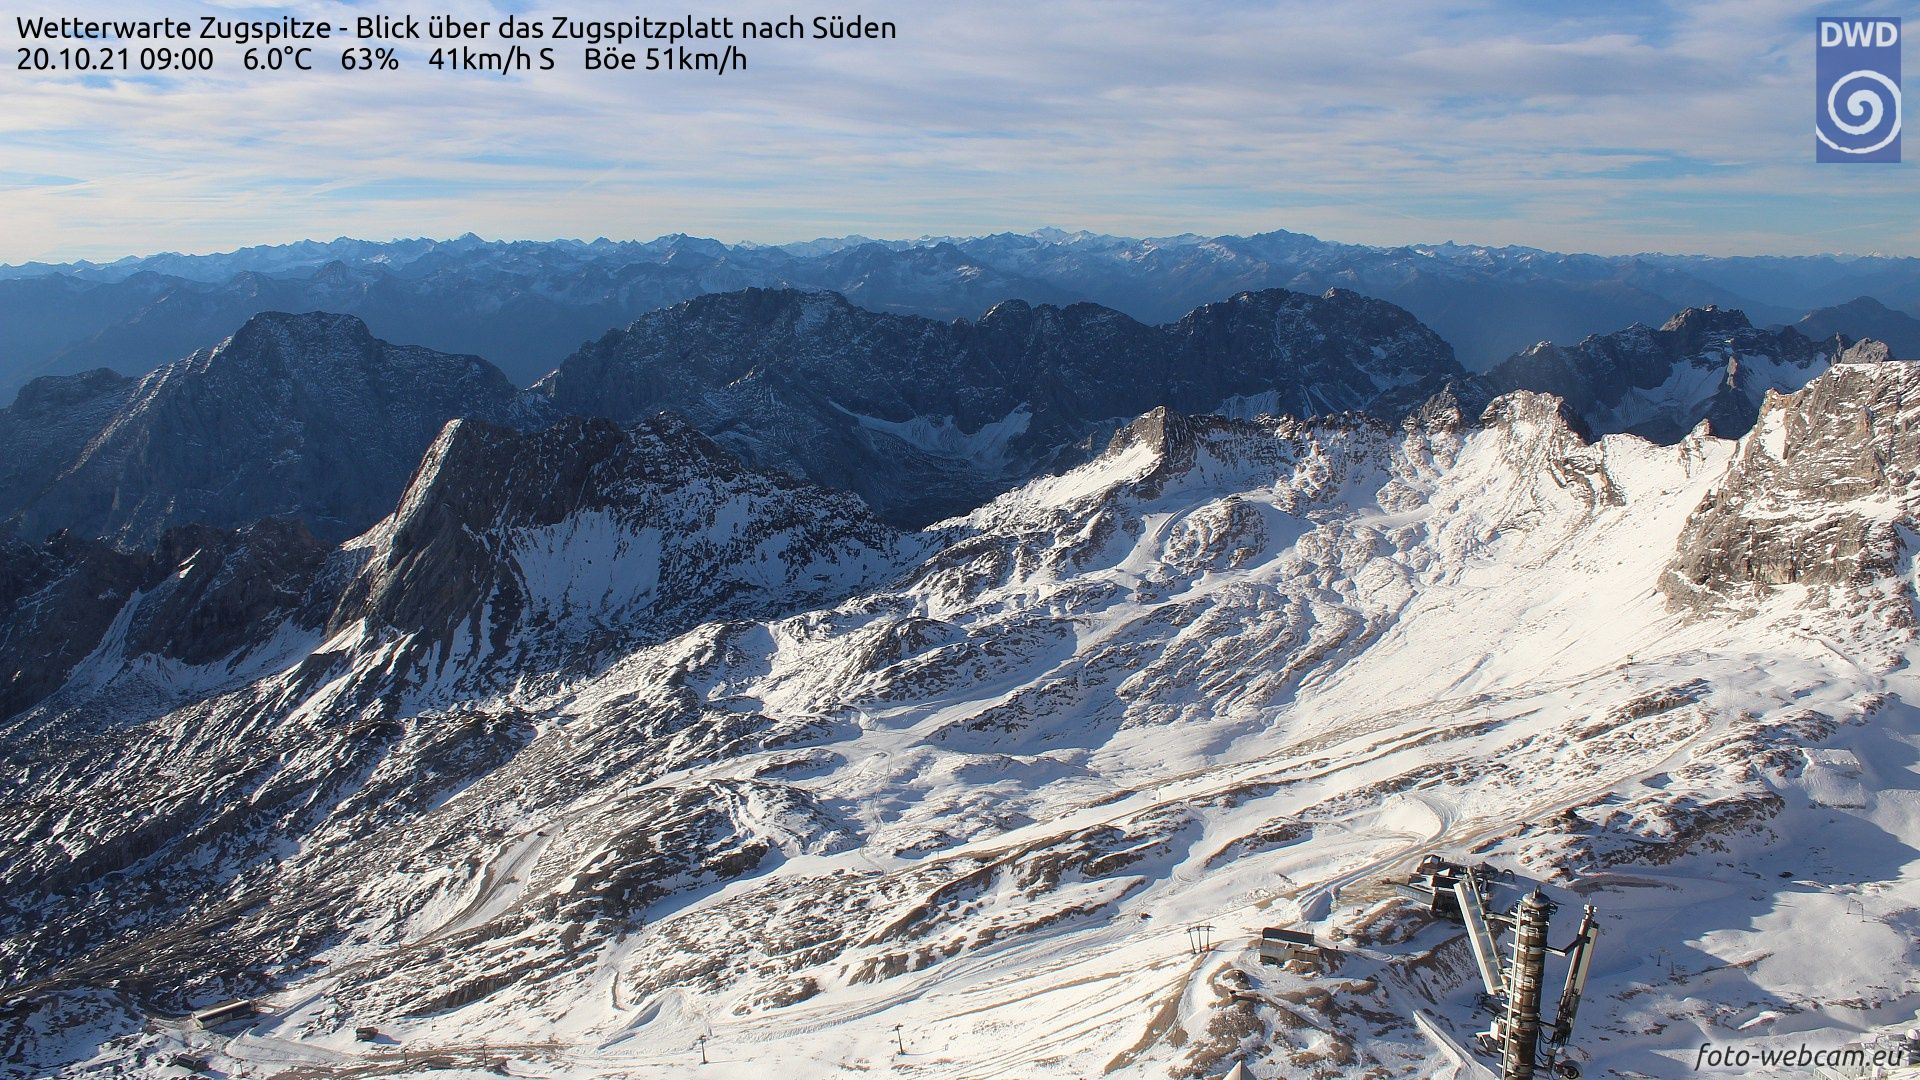 Nog geen gesloten sneeuwdek op de Zugspitzplatt (foto-webcam.eu)